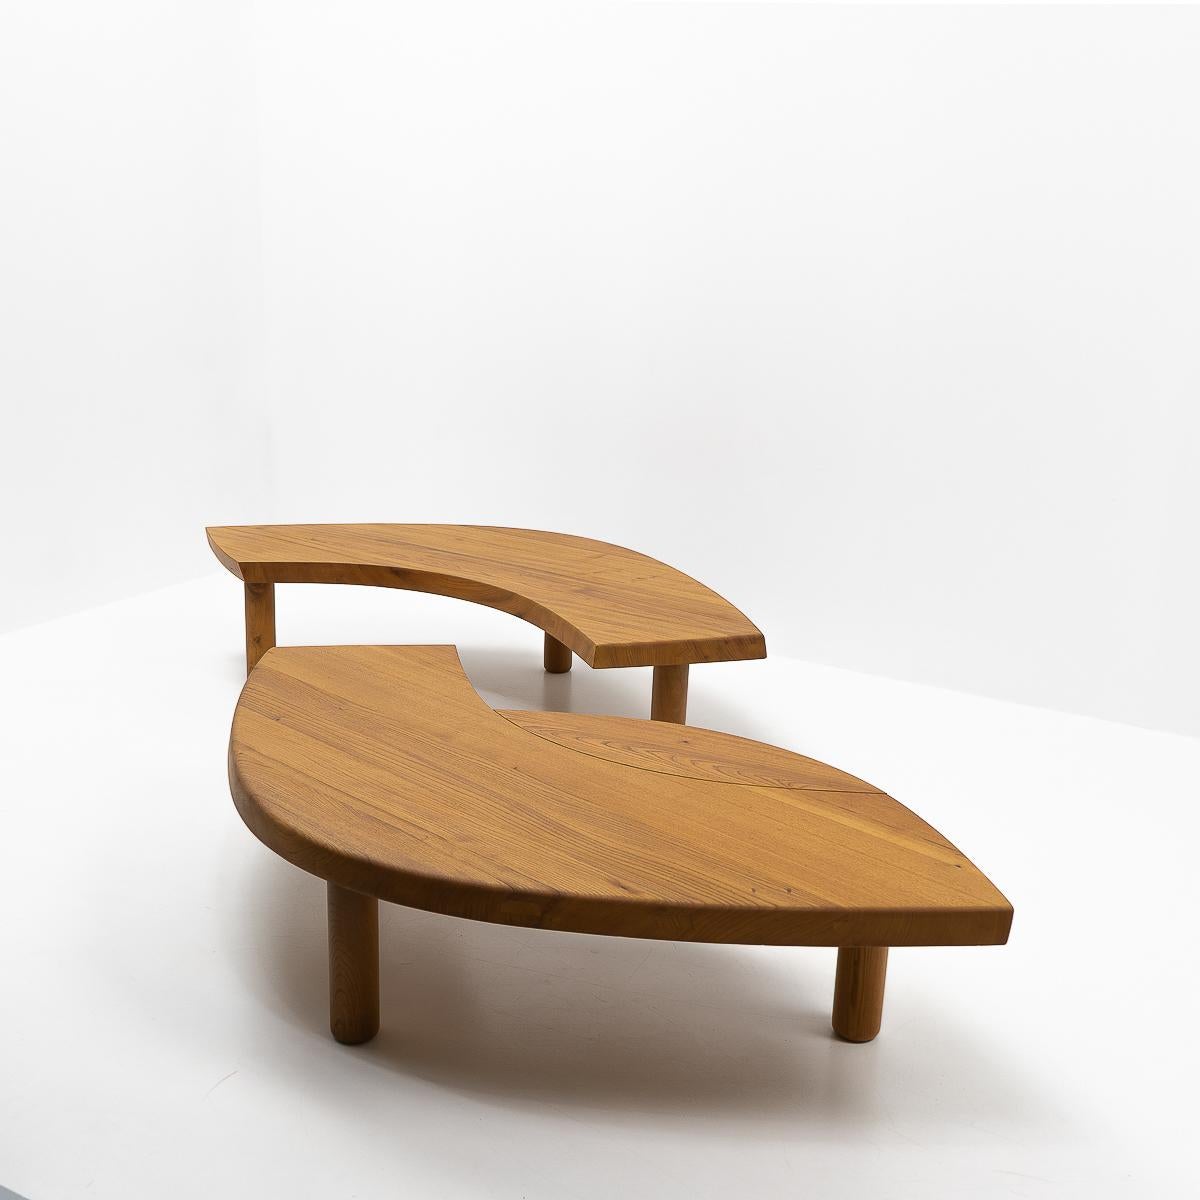 Magnifique table basse originale T22 de forme ovale, conçue par Pierre Chapo : La table est composée de trois parties individuelles, qui peuvent être séparées selon les images.

Comme tous les meubles de Chapo, cette pièce montre un excellent